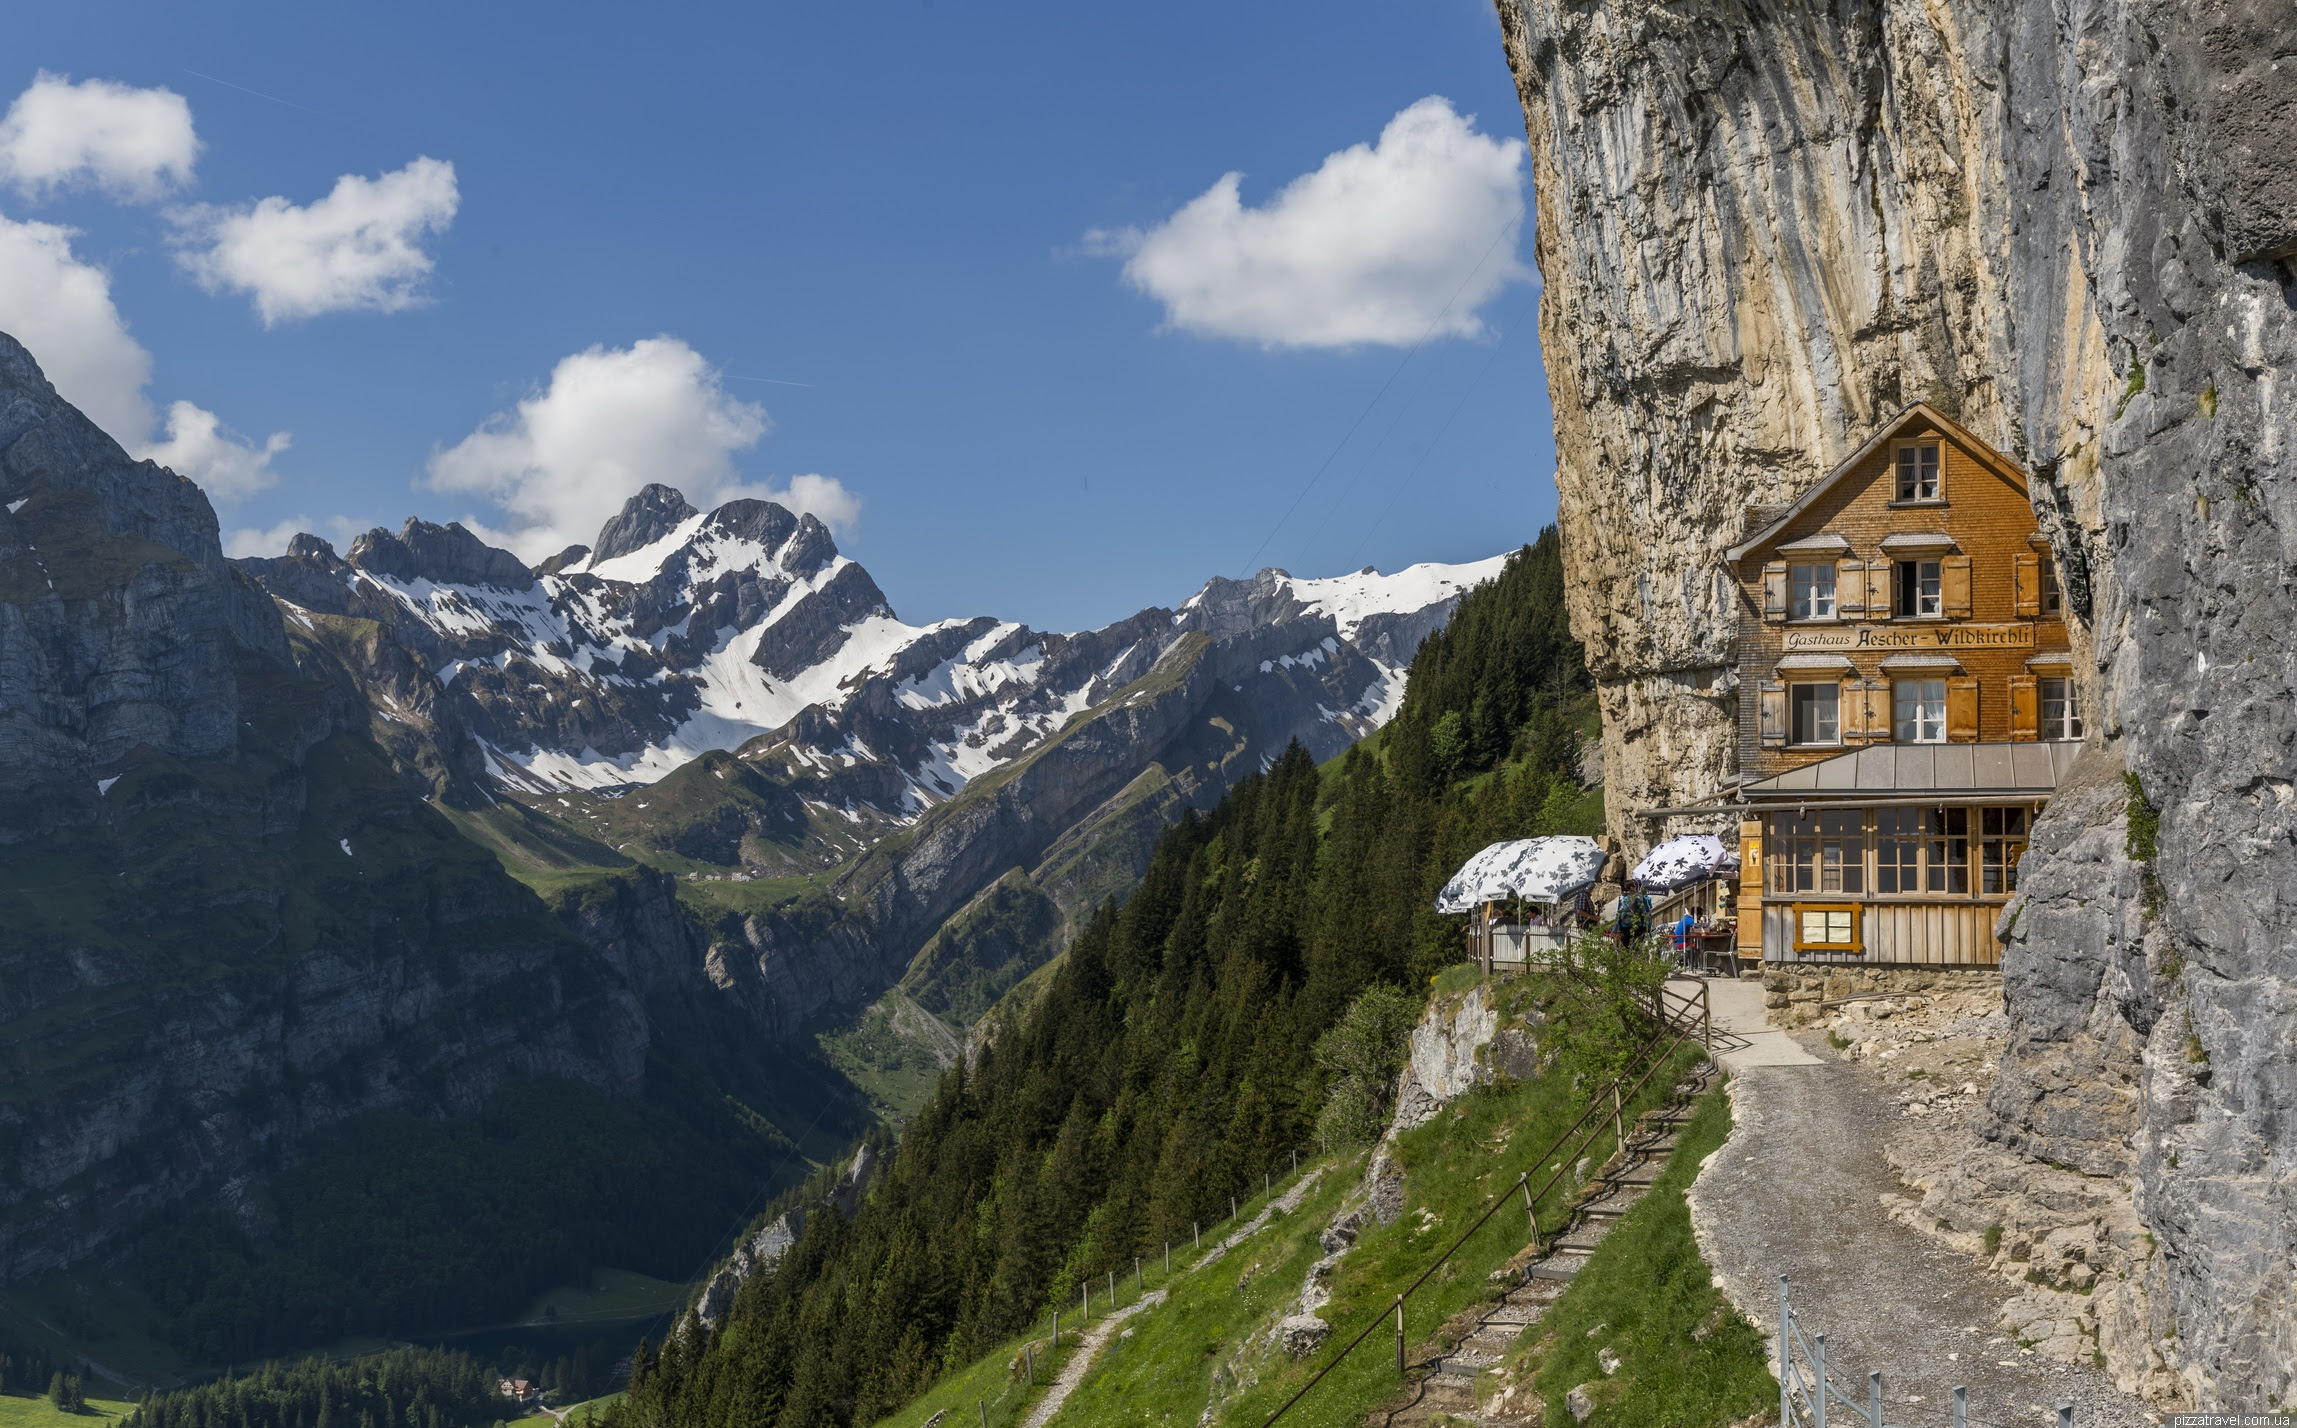 Aescher Hotel In Switzerland Switzerland Hotel Ideas